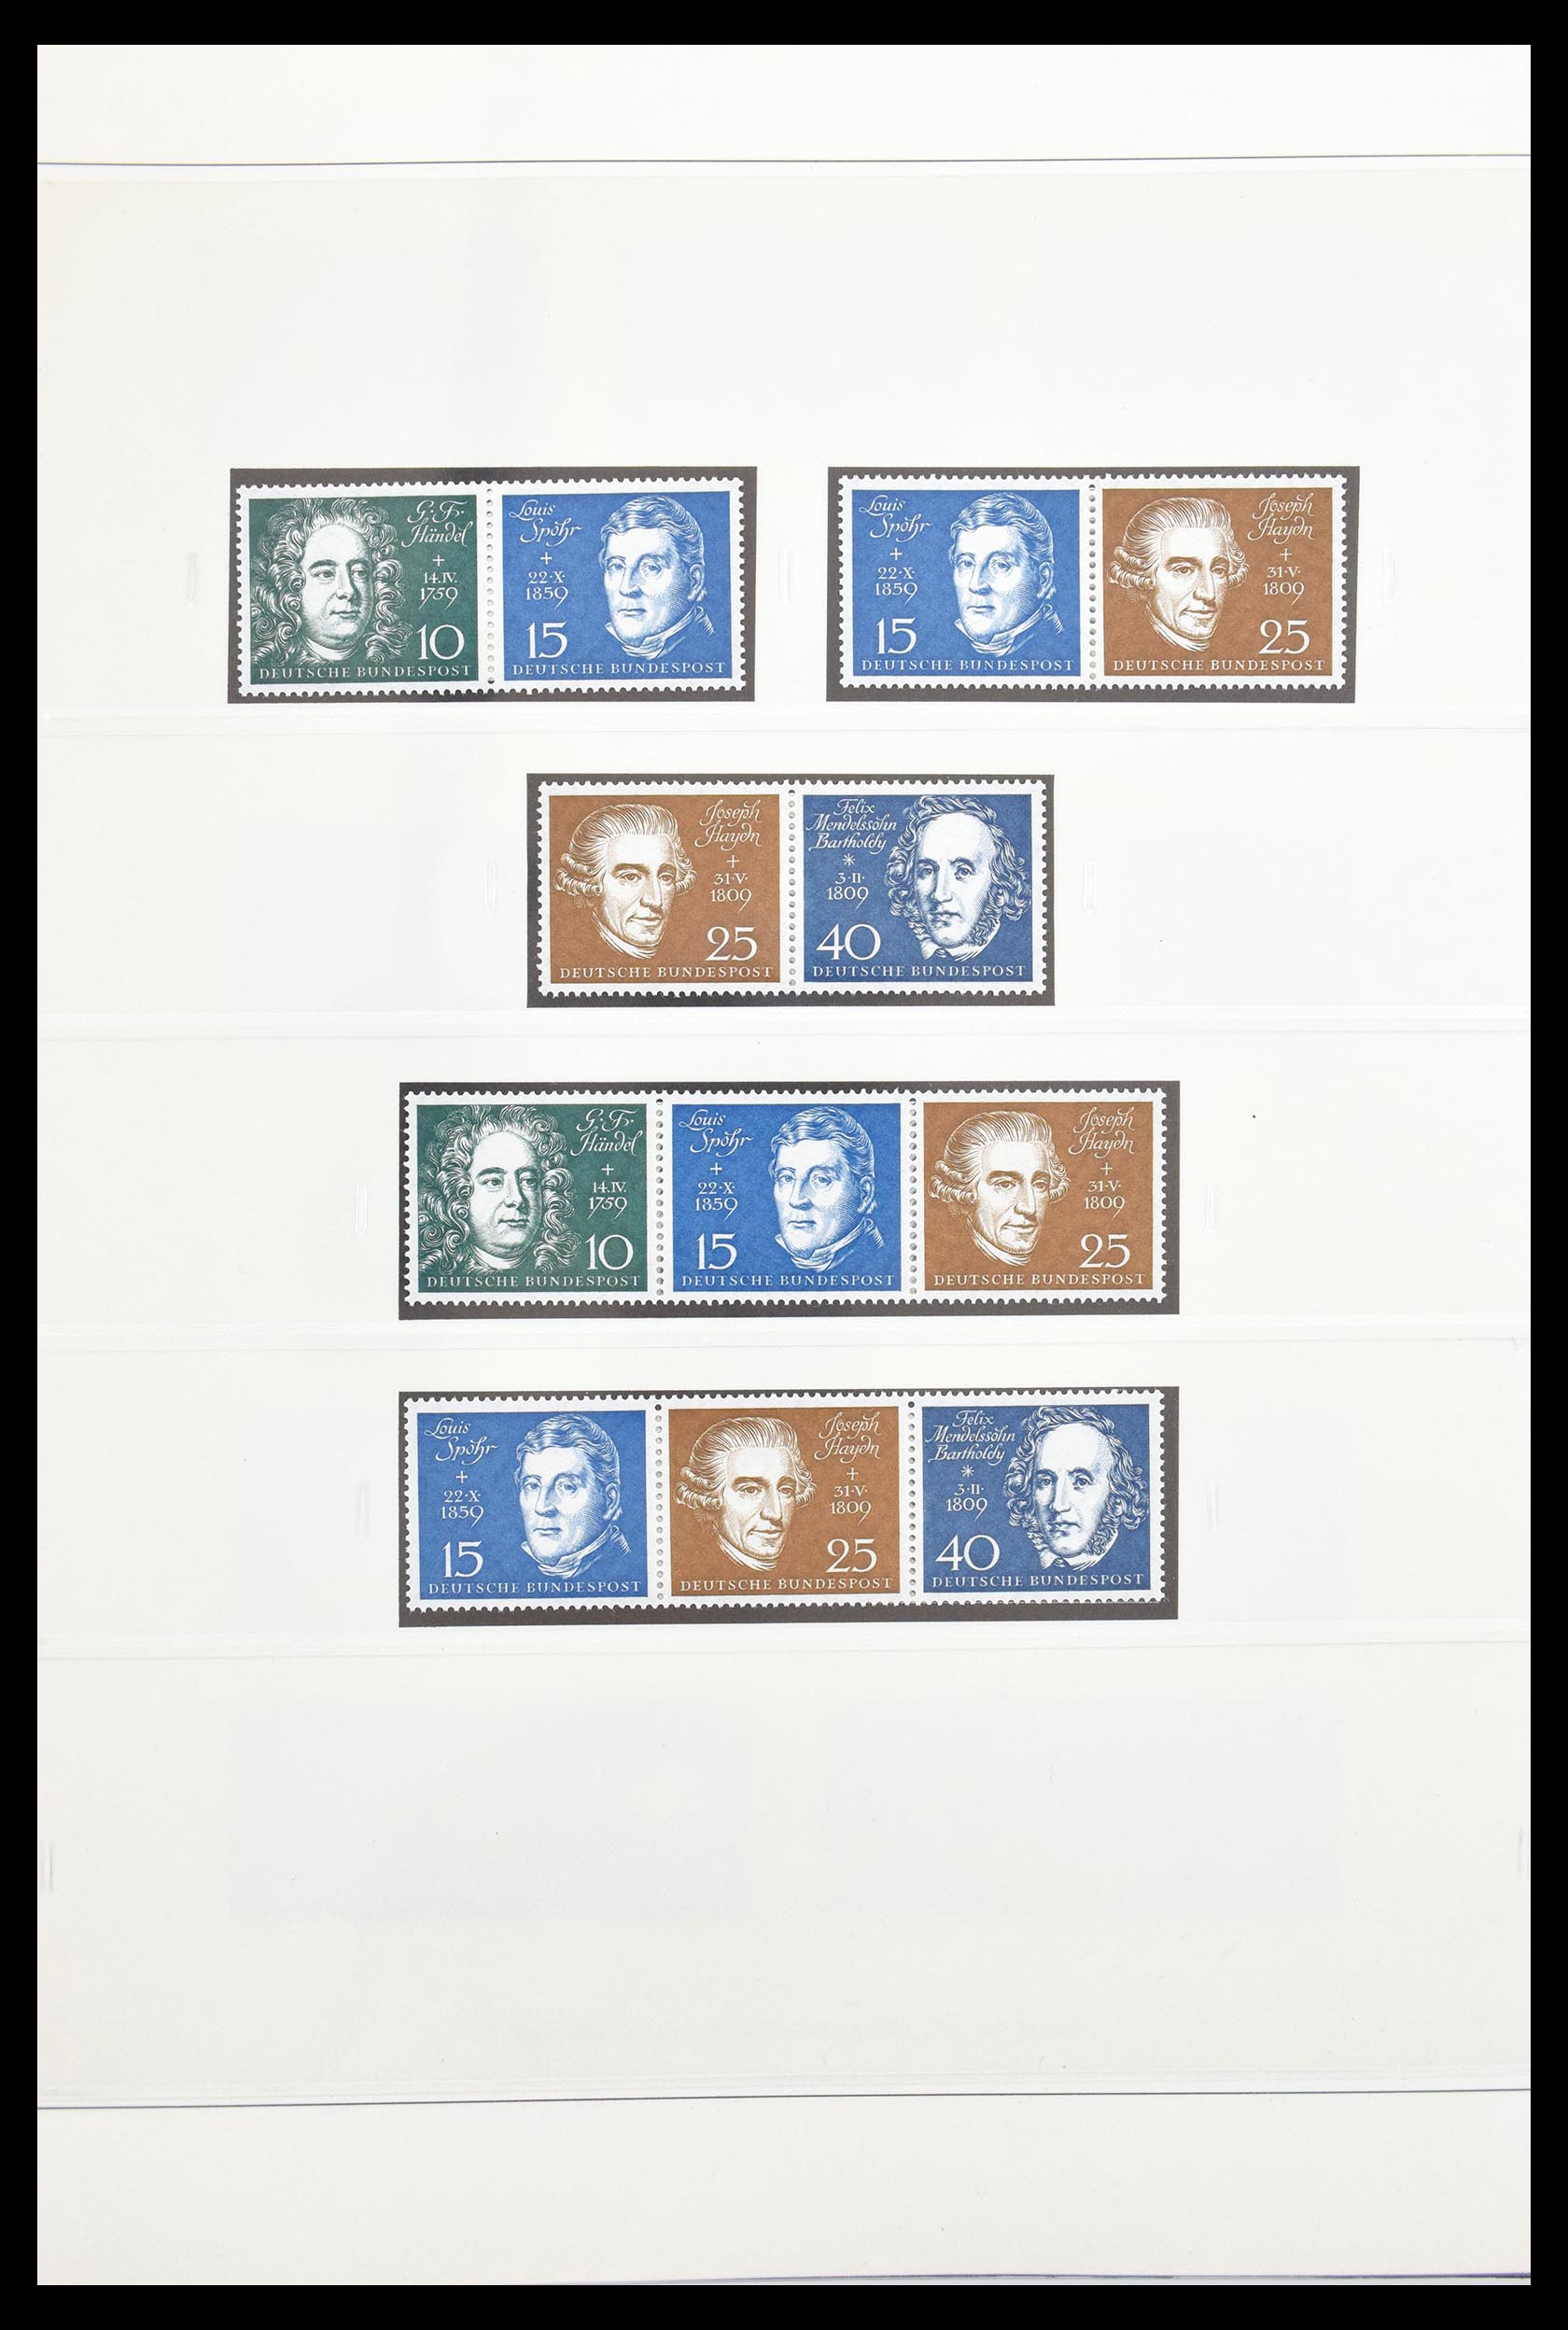 30605 012 - 30605 Bundespost combinaties 1951-1974.